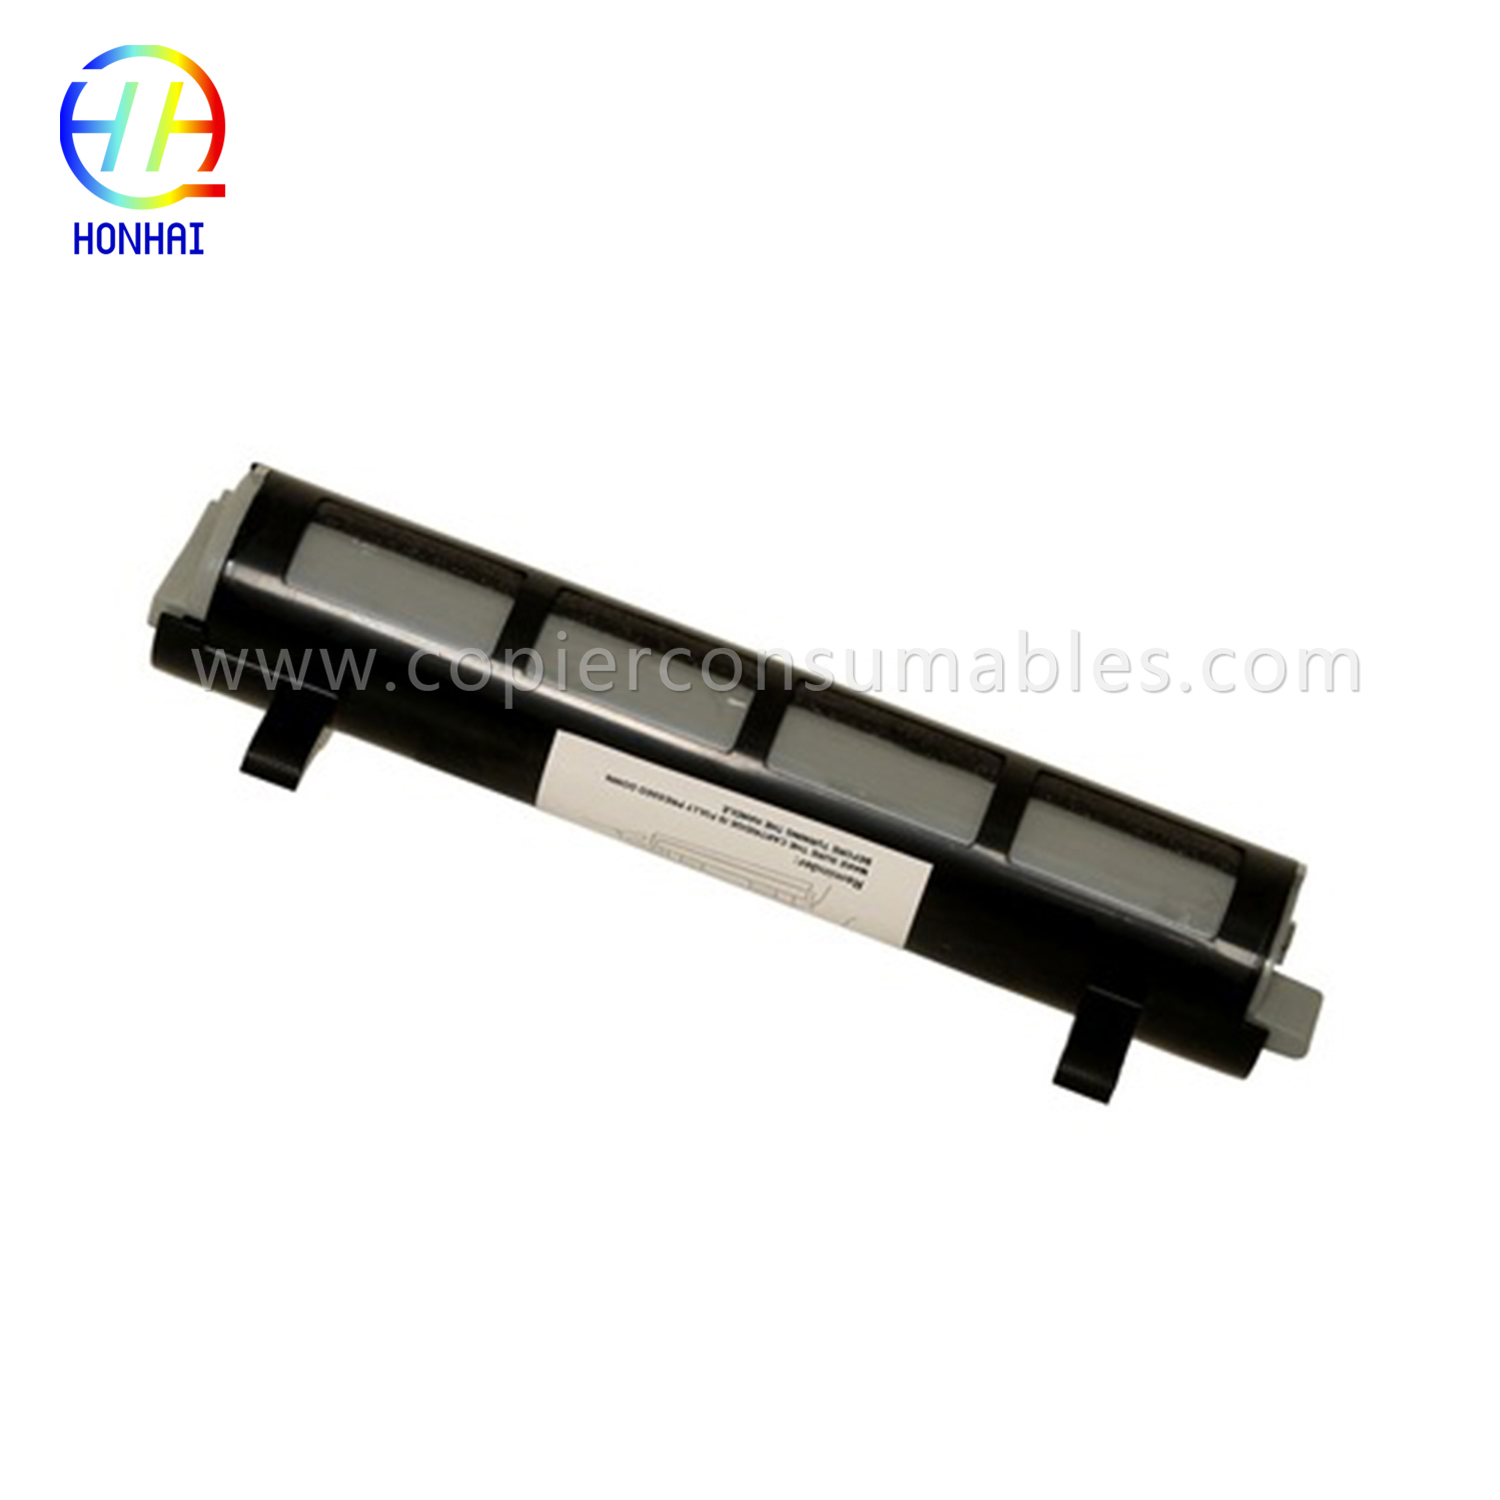 I-Black Toner Cartridge ye-Panasonic Kx-FL511 Kx-Fa83 Kx-FL541 Kx-FL611 Kx-Flm651 Kx-Flm661 Kx-Flm671 拷贝